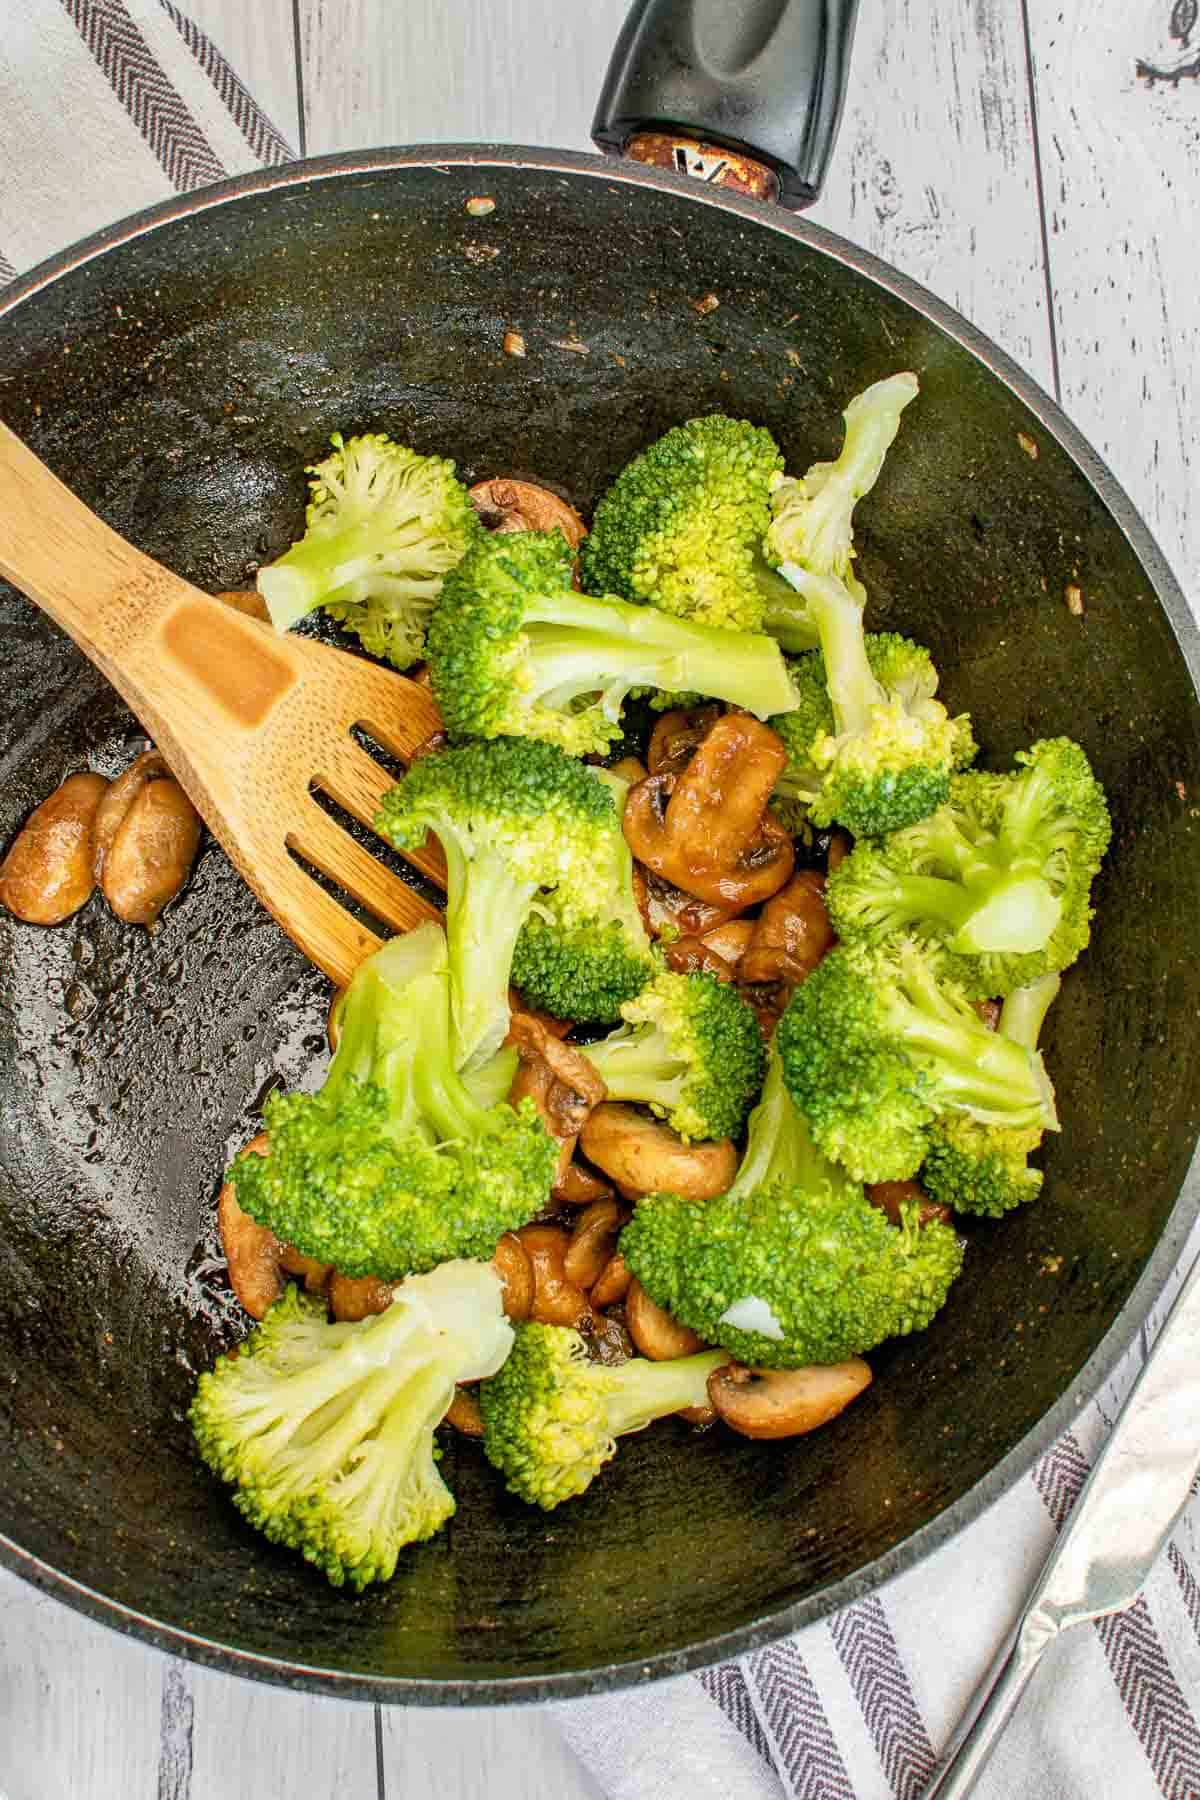 Broccoli and mushroom stir fry in a wok.